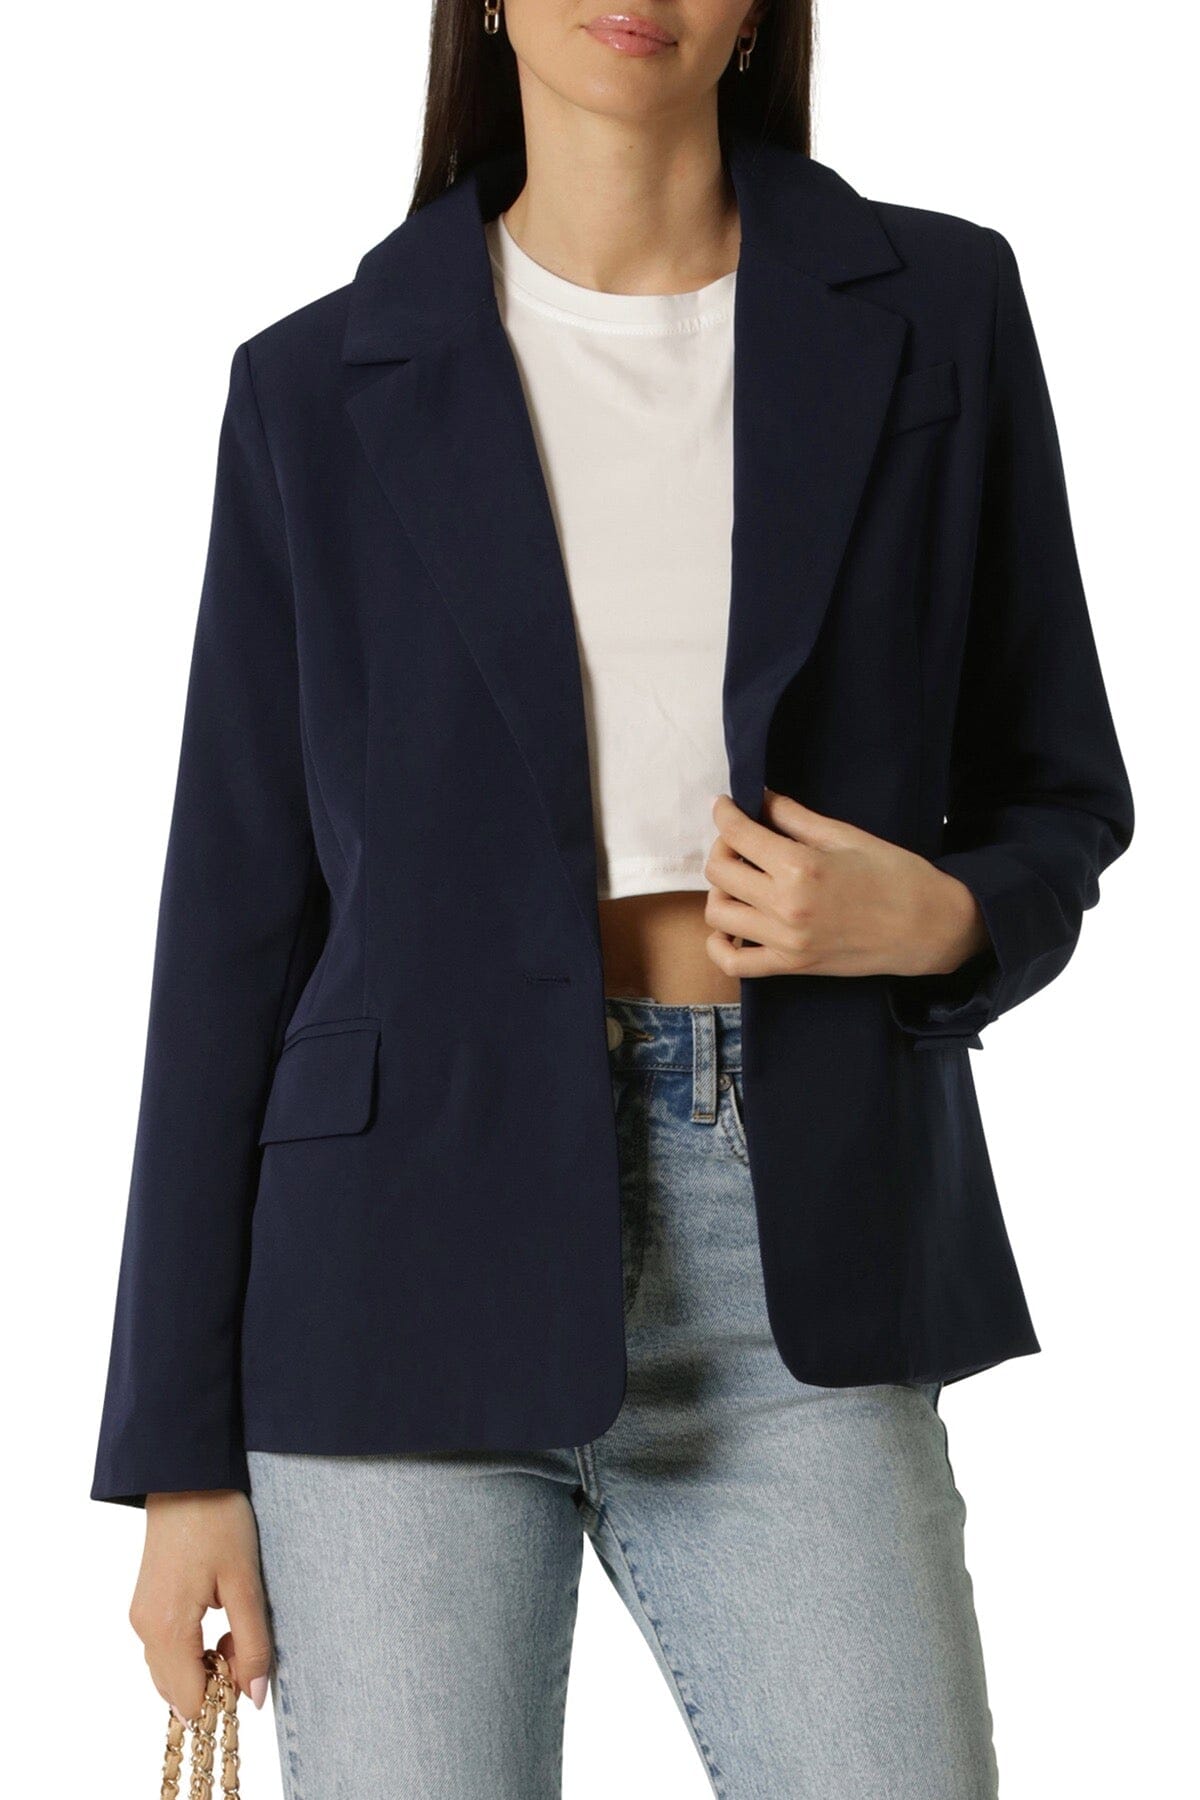 Navy blue figure flattering single button stretch suit blazer jacket coat women by Avec Les Filles